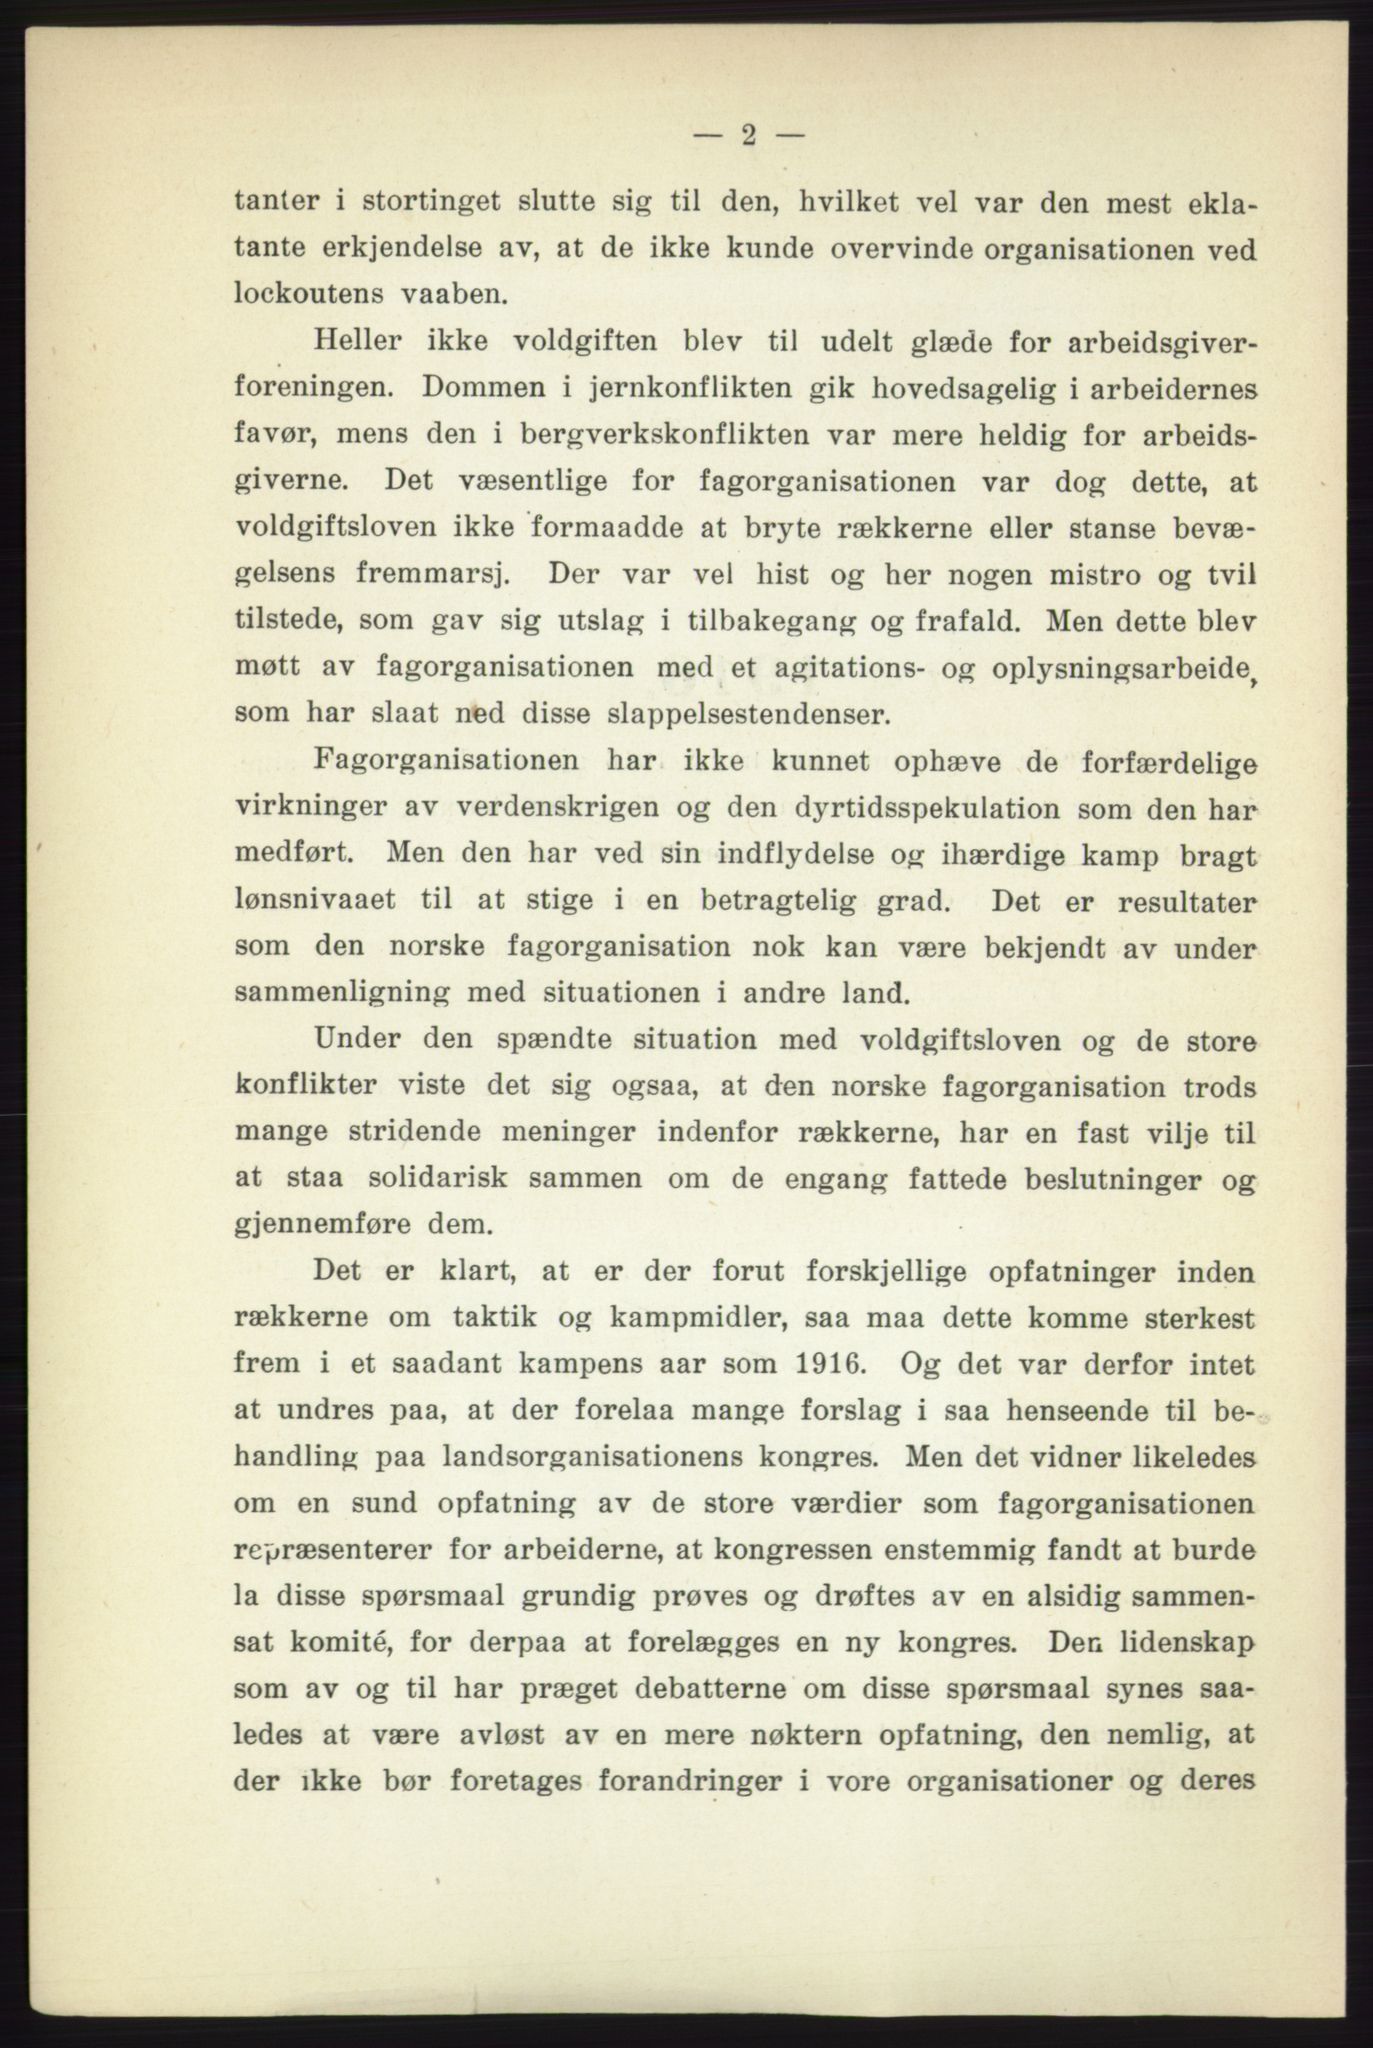 Landsorganisasjonen i Norge - publikasjoner, AAB/-/-/-: Landsorganisationens beretning for 1916, 1916, s. 2